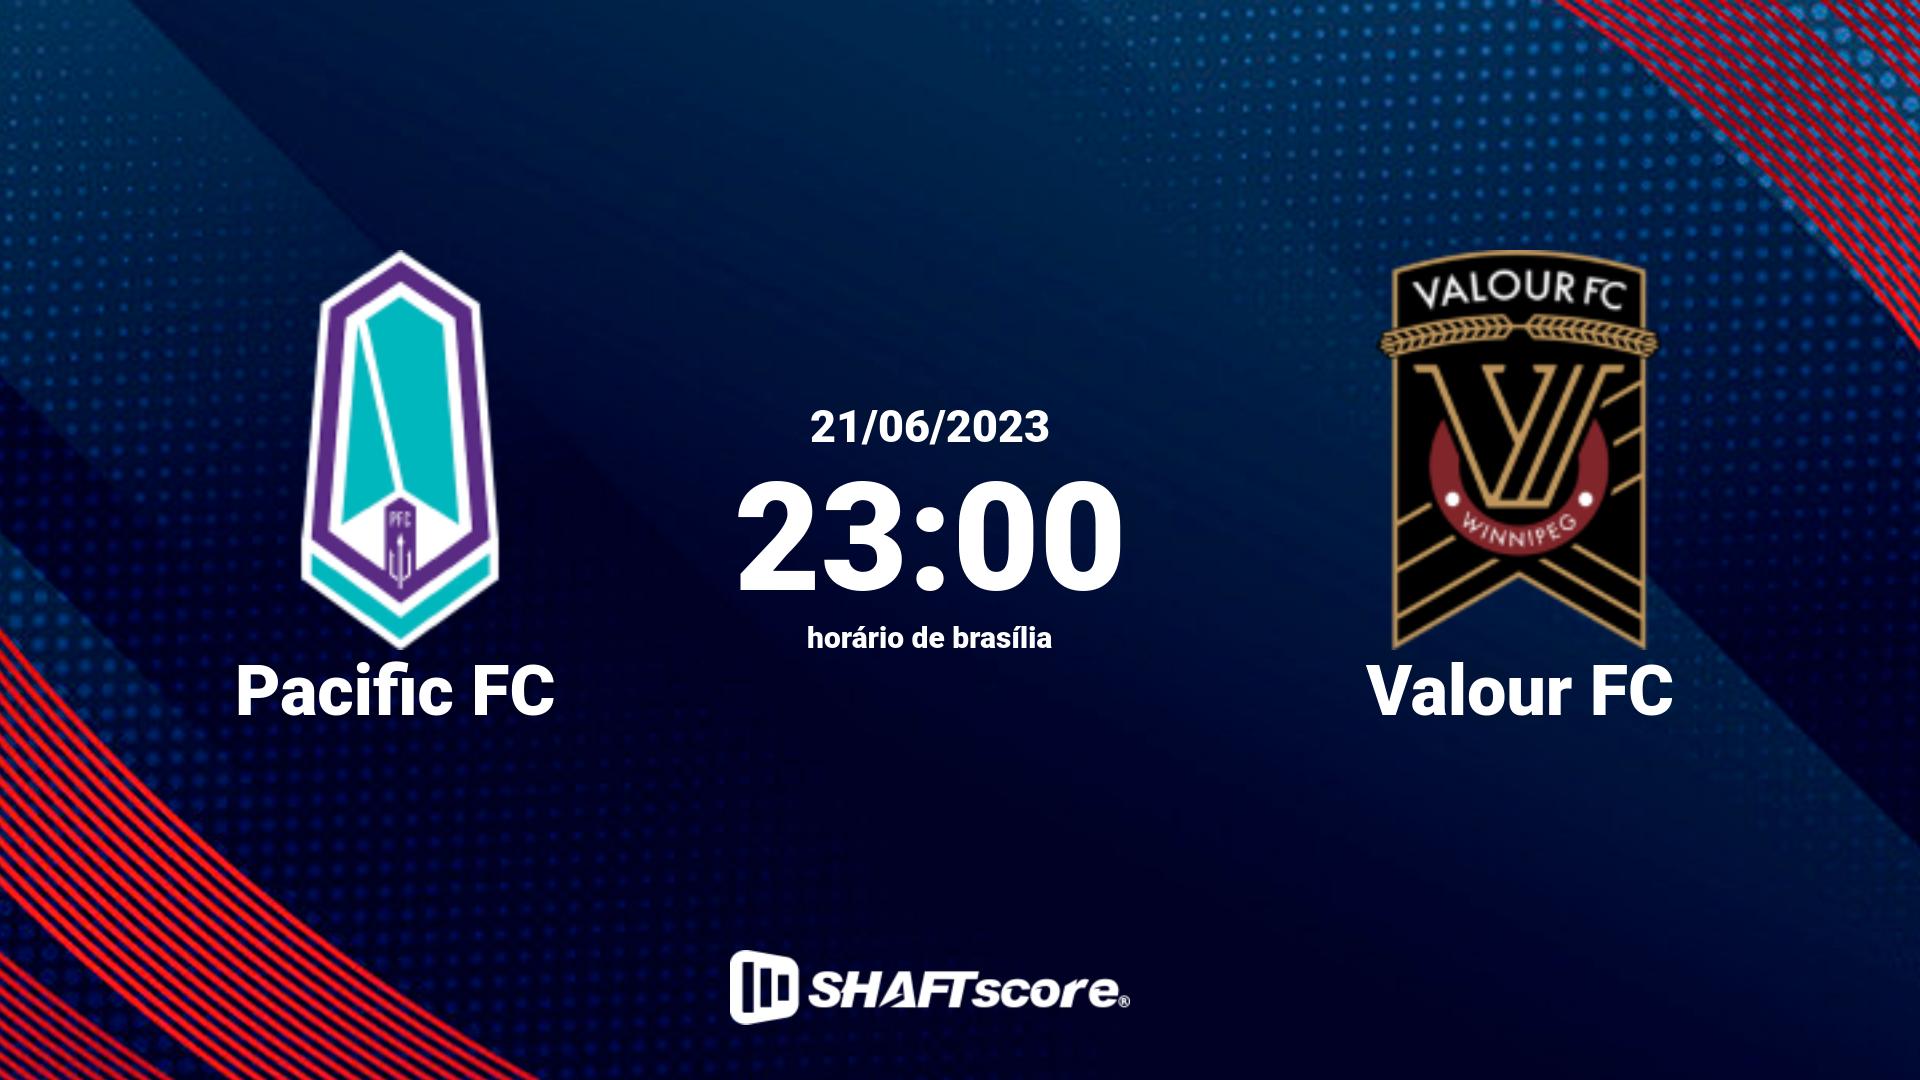 Estatísticas do jogo Pacific FC vs Valour FC 21.06 23:00